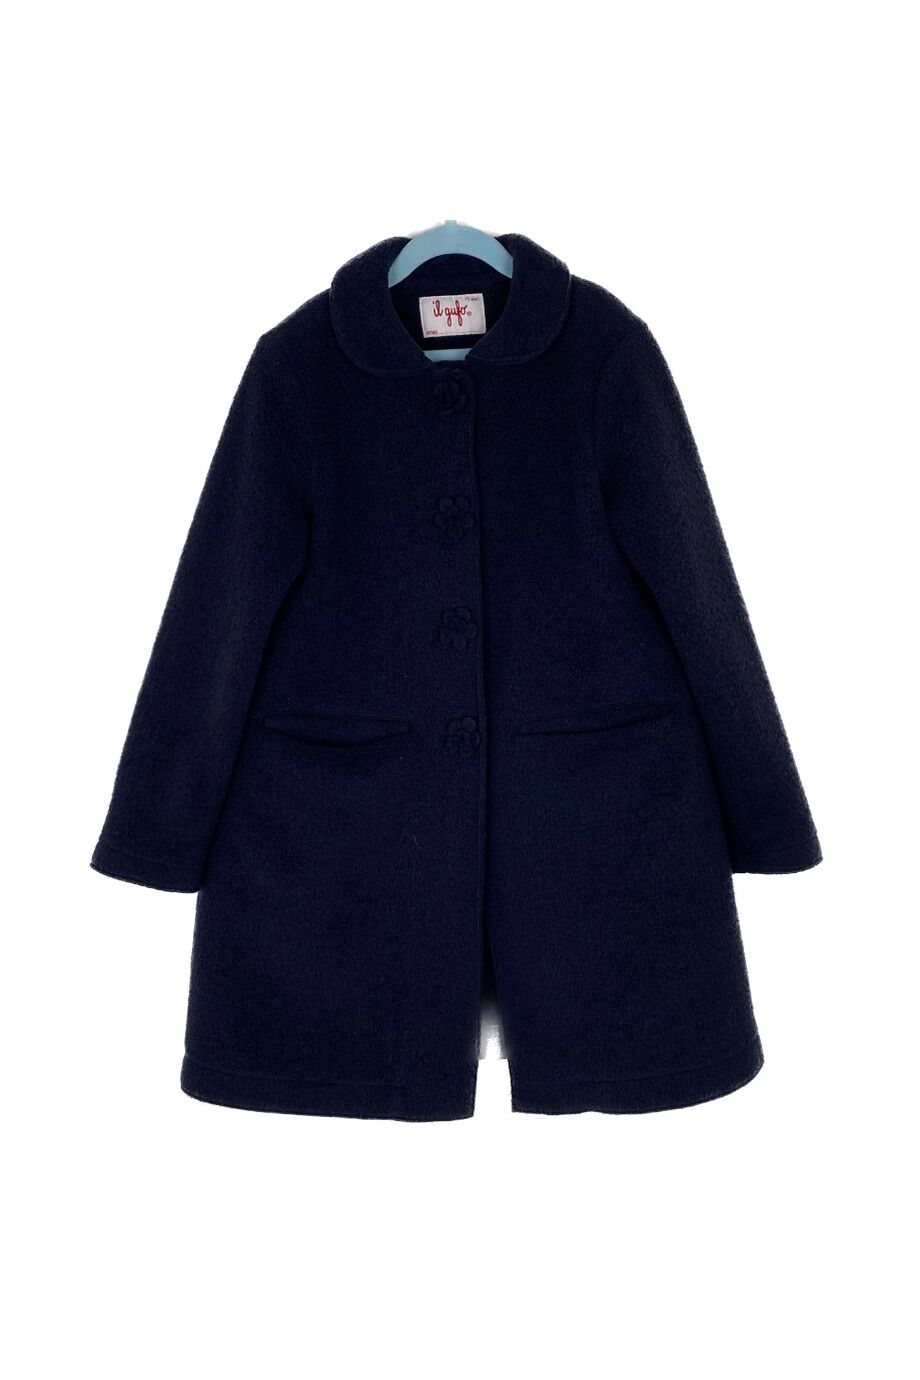 image 1 Детское пальто темно-синего цвета на кнопках